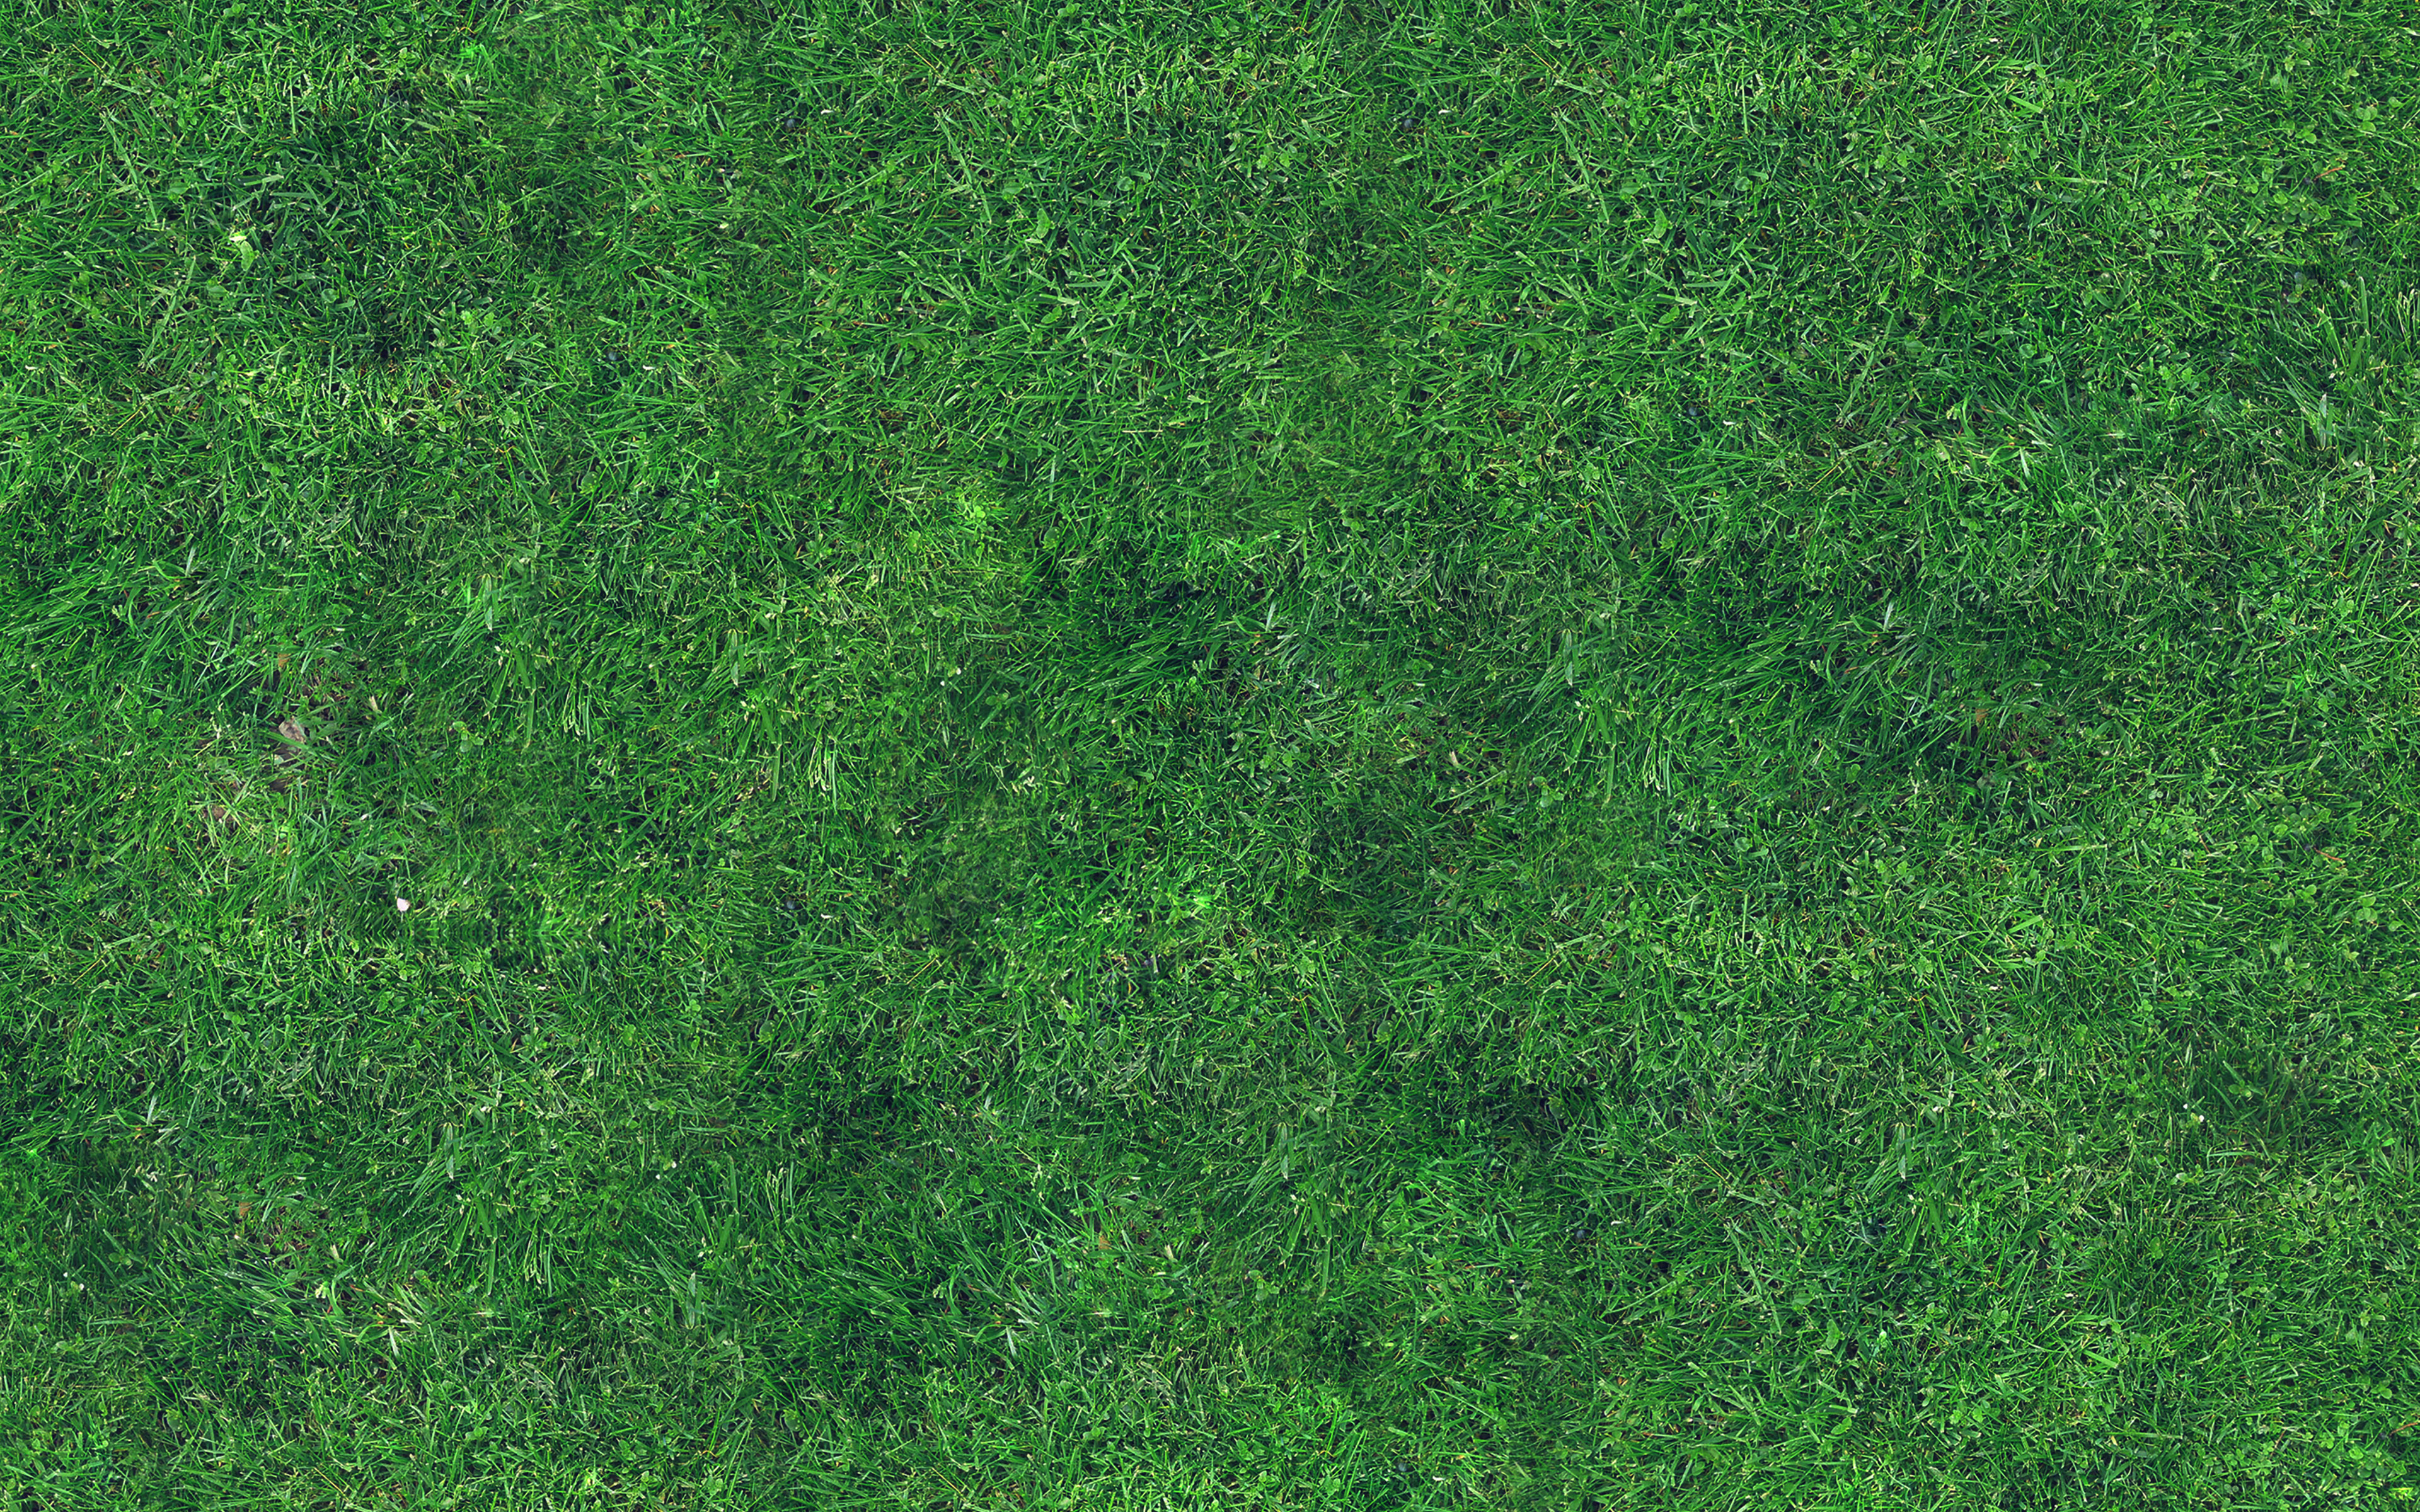 wallpaper for desktop, laptop. grass texture nature pattern